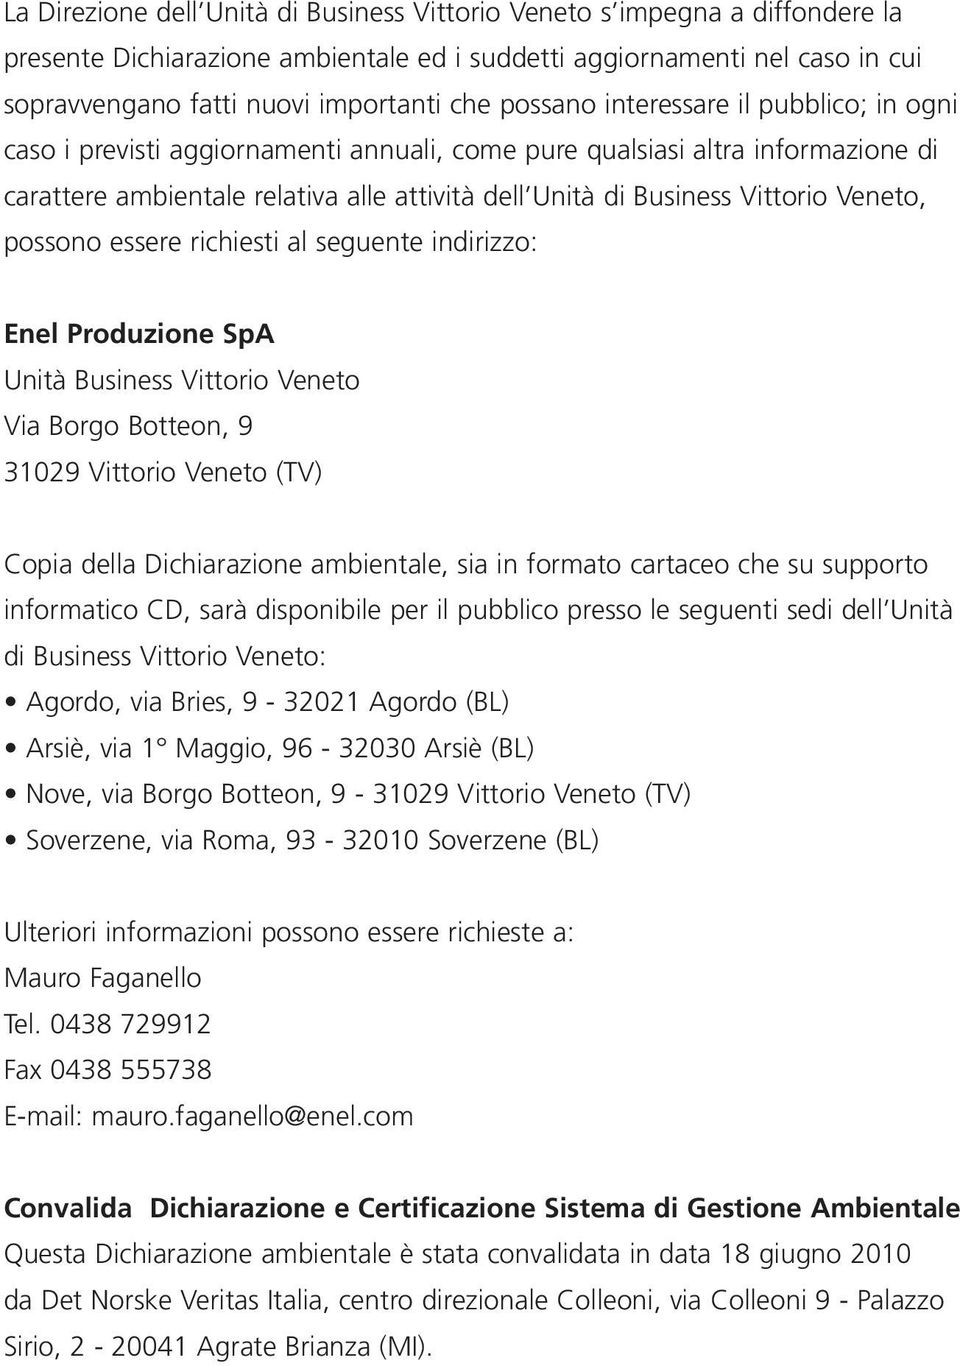 Veneto, possono essere richiesti al seguente indirizzo: Enel Produzione SpA Unità Business Vittorio Veneto Via Borgo Botteon, 9 31029 Vittorio Veneto (TV) Copia della Dichiarazione ambientale, sia in